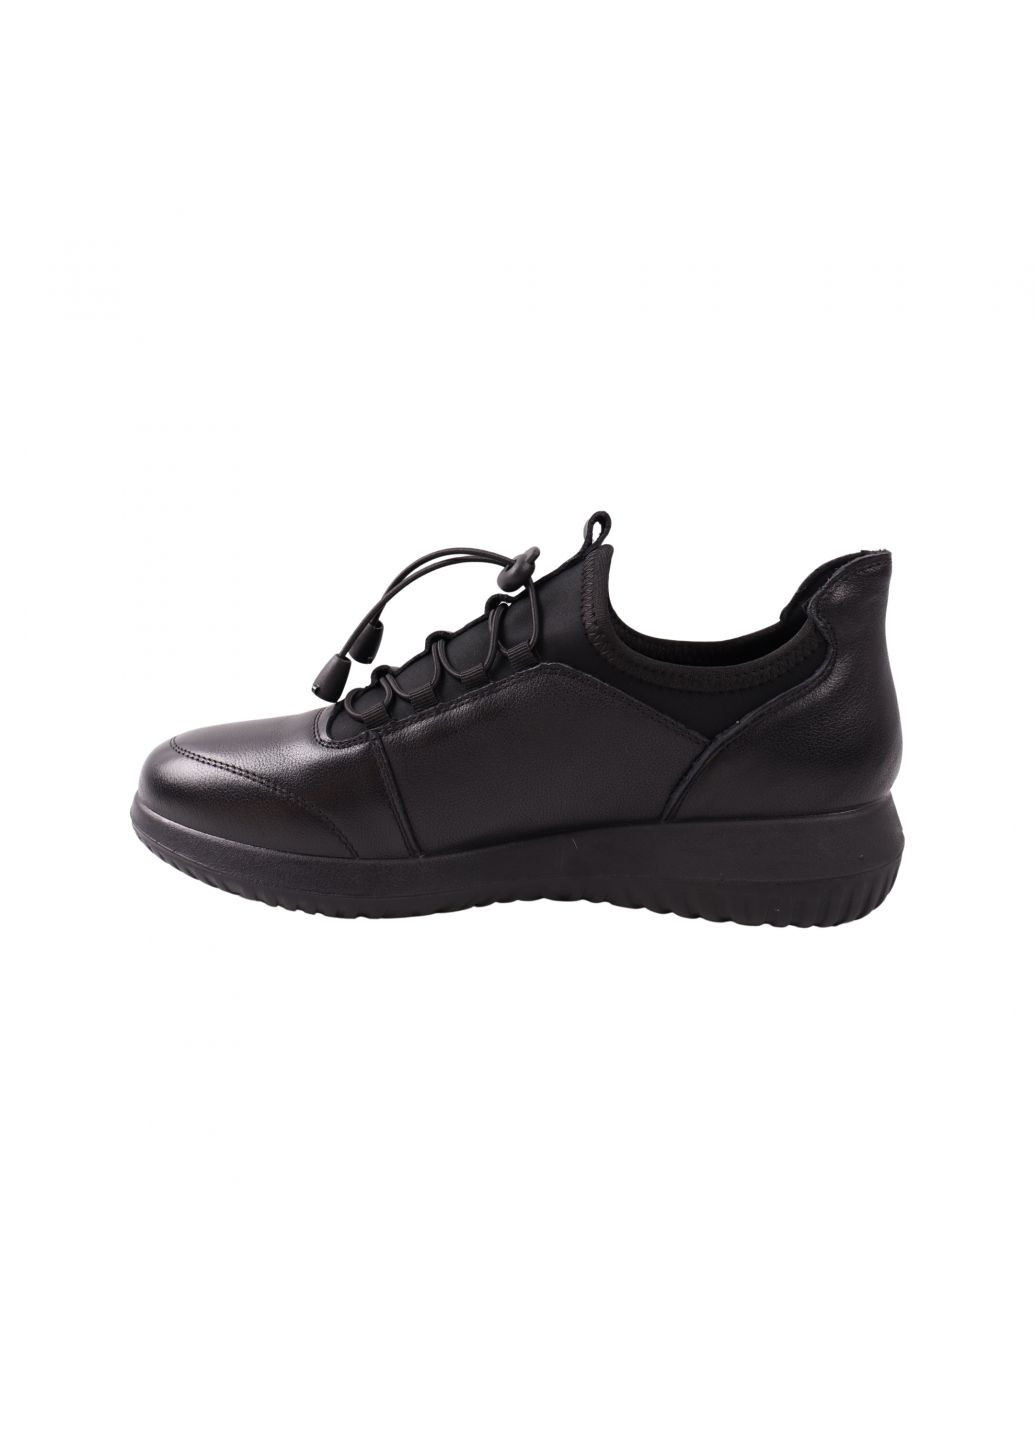 Чорні кросівки жіночі чорні натуральна шкіра Renzoni 1006-23DTC